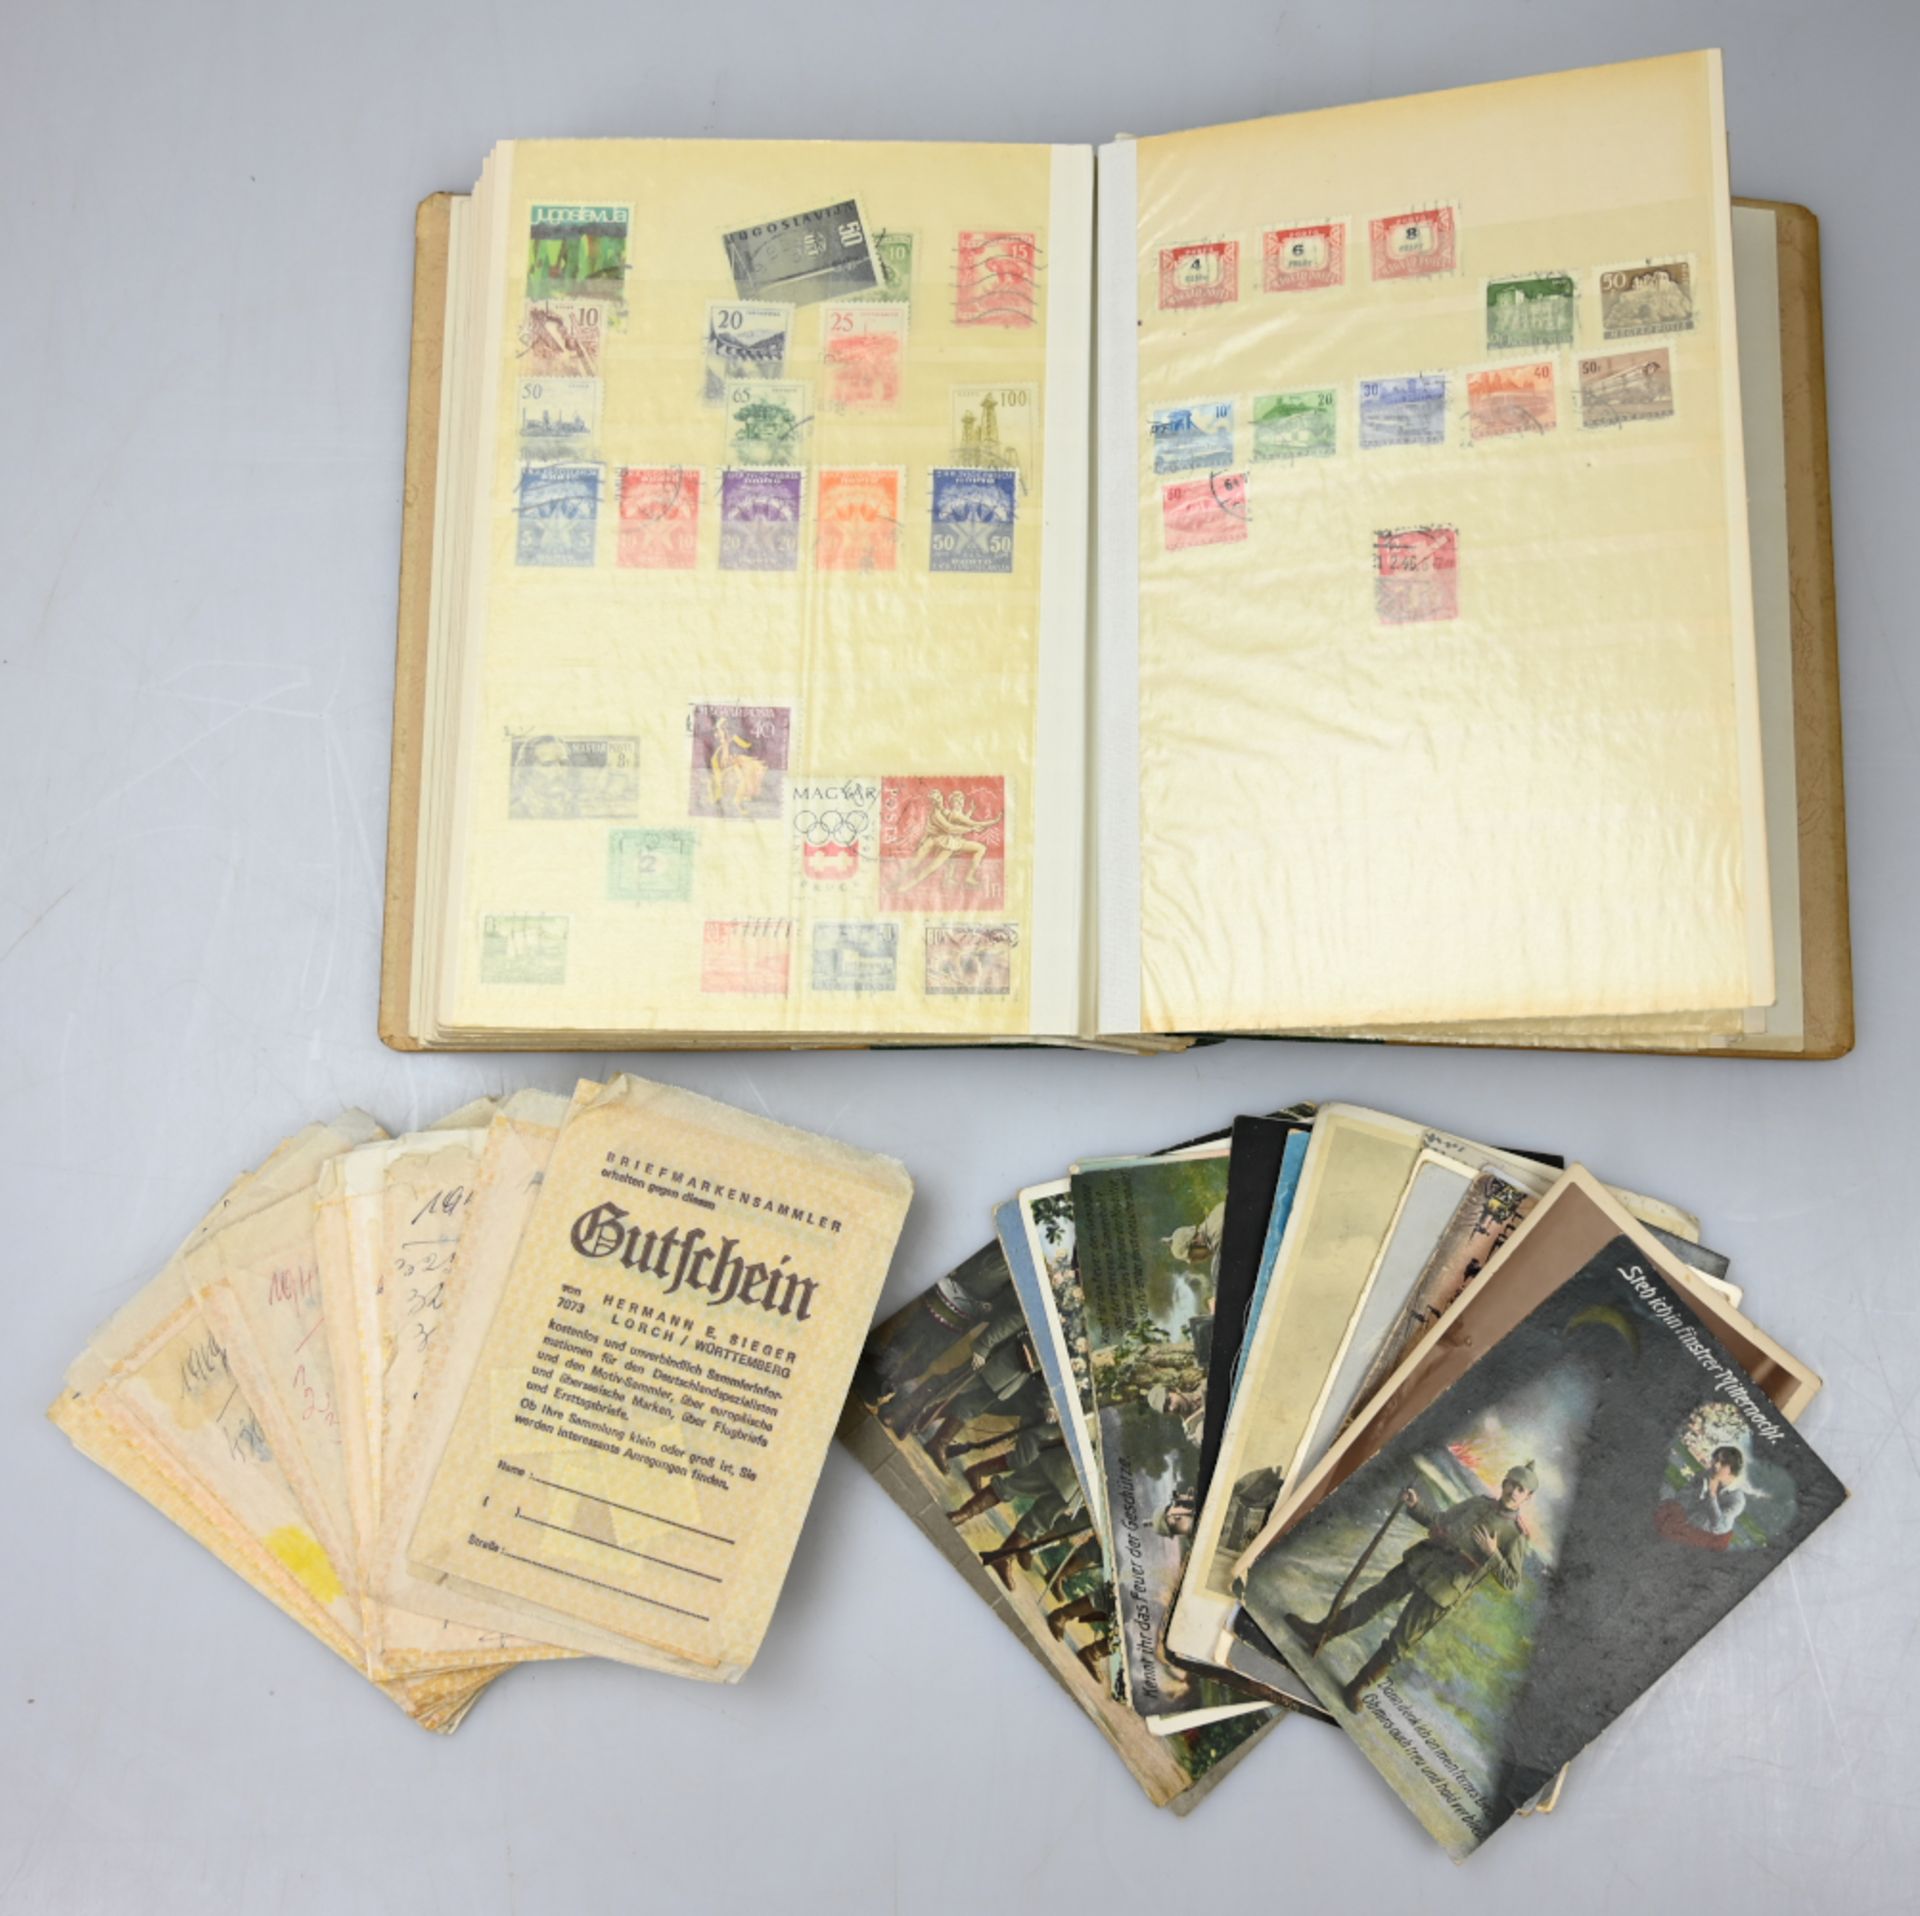 1 Konv. Postkarten (über 50 Stück) z.T. 1. WK z.T. gelaufen/frankiert, 2 Broschüren "Liederbuch der